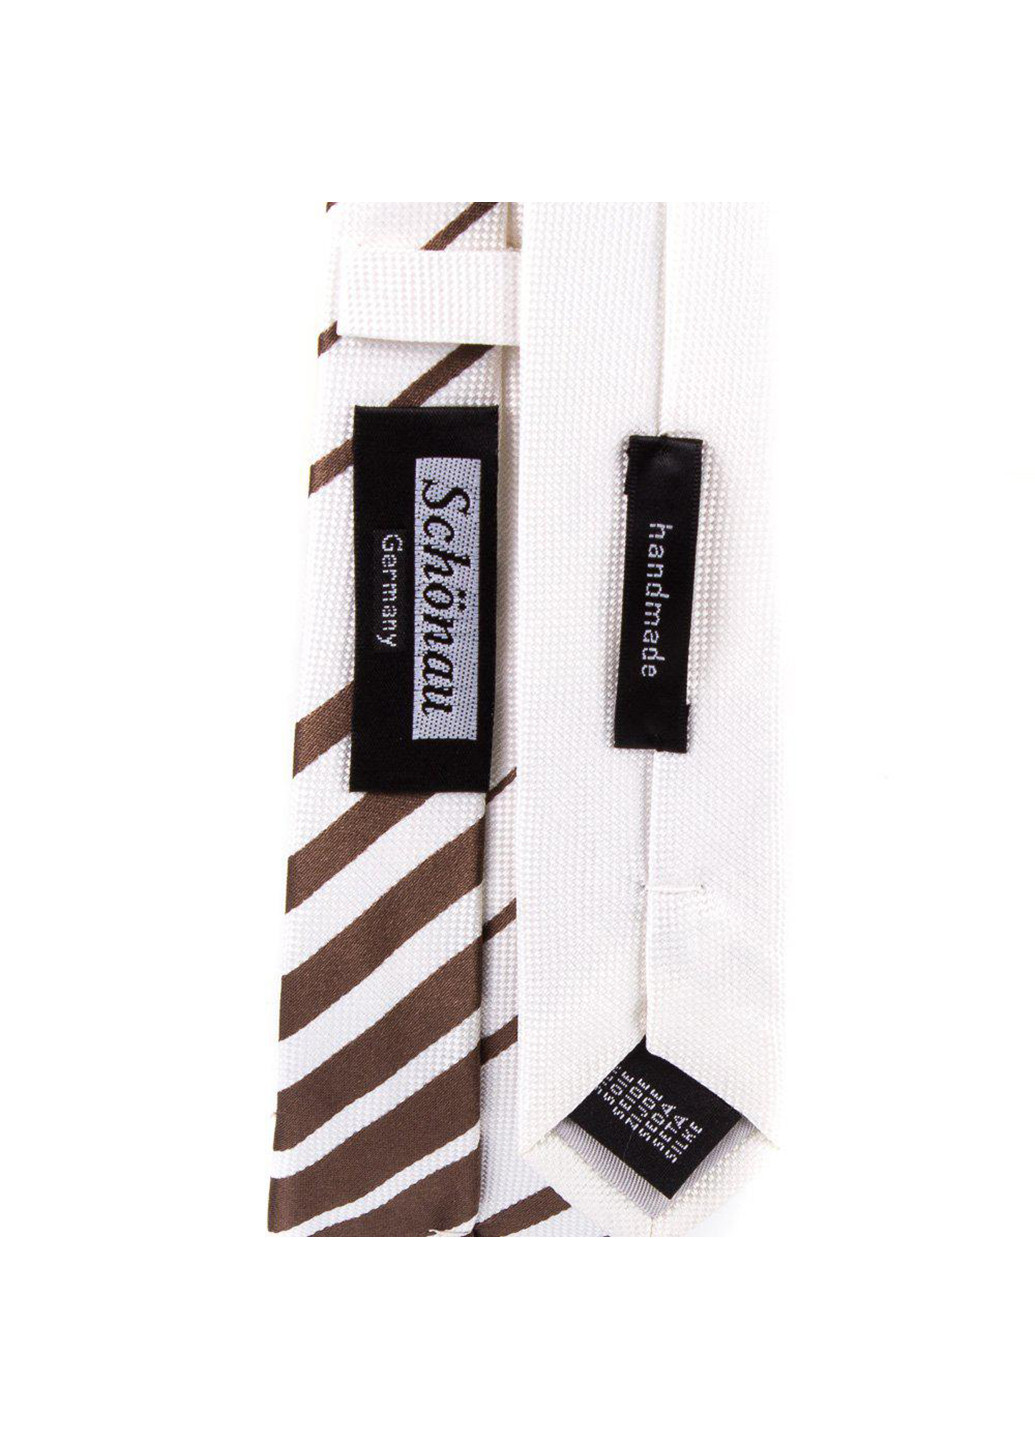 Мужской шелковый галстук 146 см Schonau & Houcken (252127460)